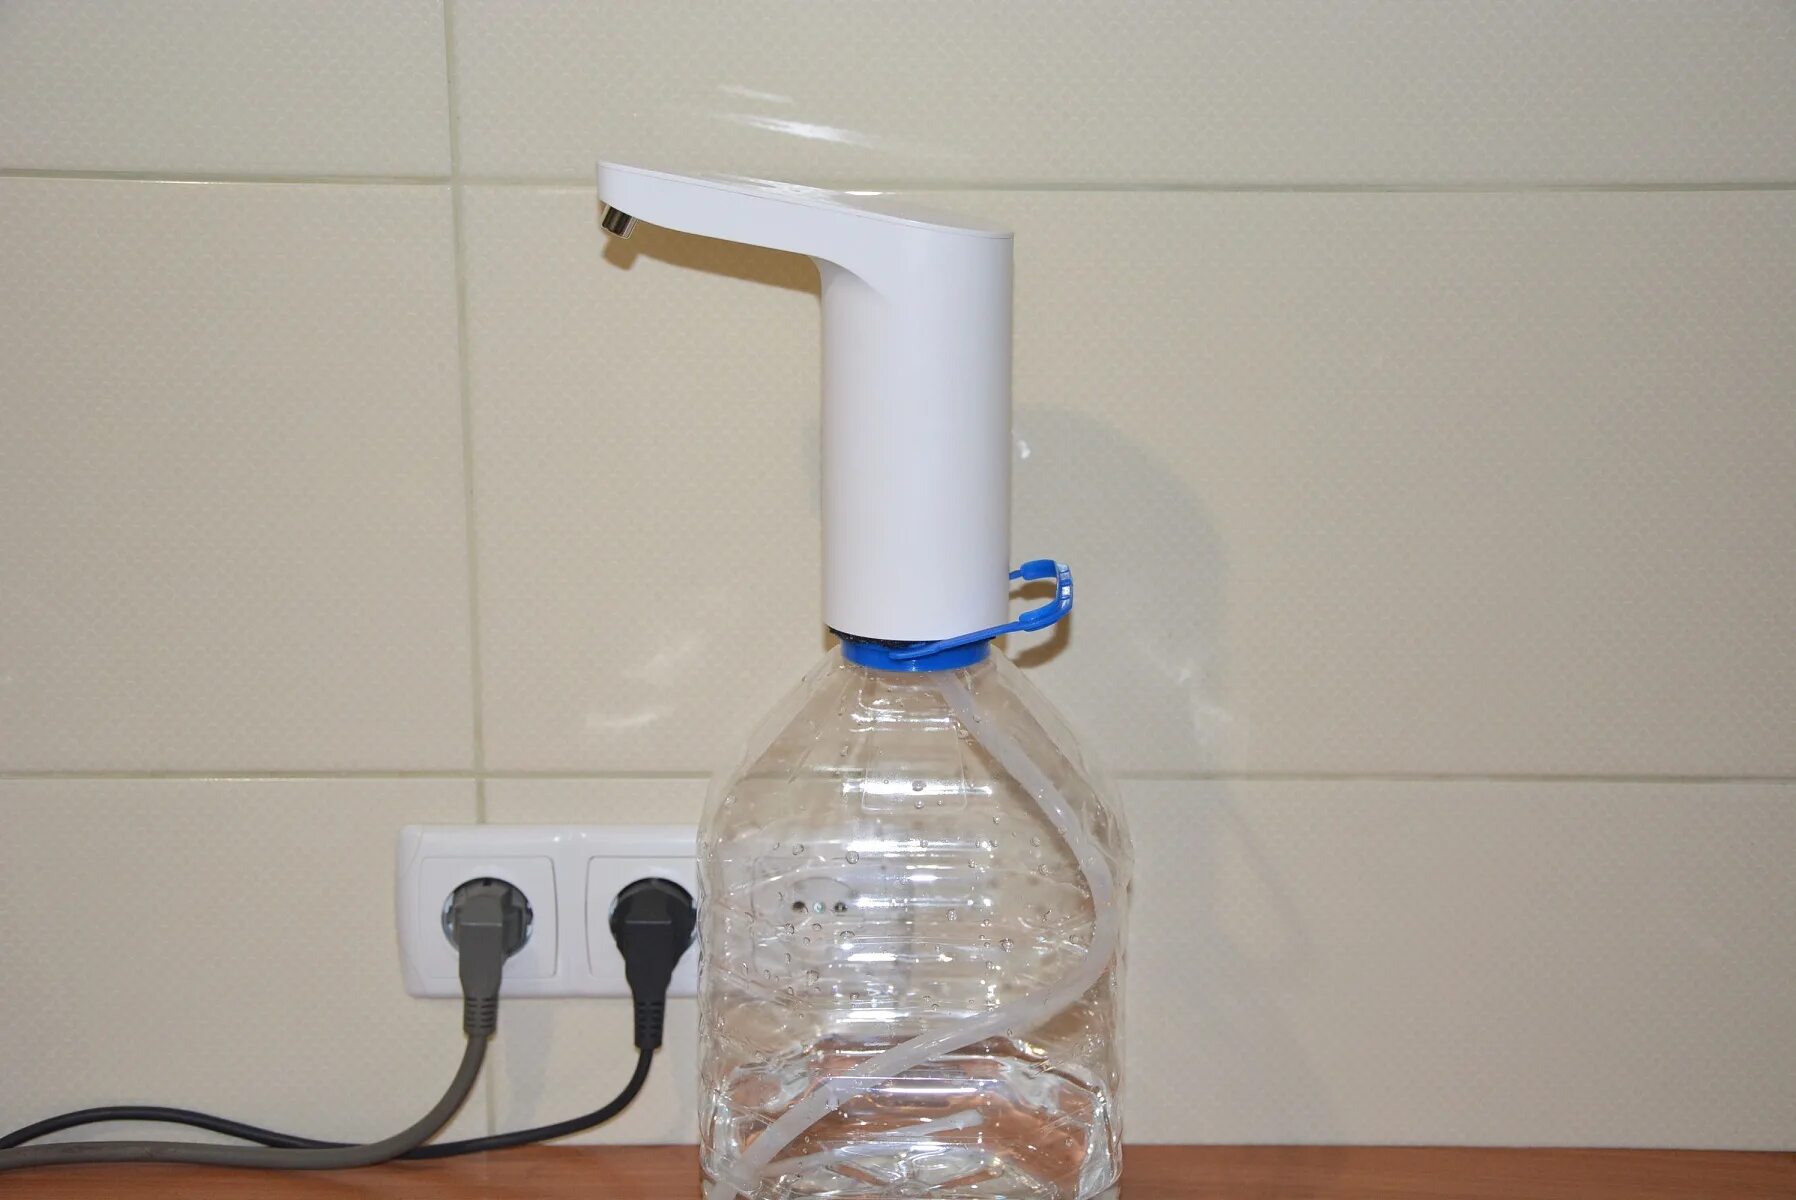 Помпа для воды электрическая на бутыль 19 литров Xiaomi. Электропомпа для бутыли 19 литров. Помпа Xiaomi для воды 19 литров. Помпа для воды на бутыль Xiaomi. Купить помпу для воды 5 литров